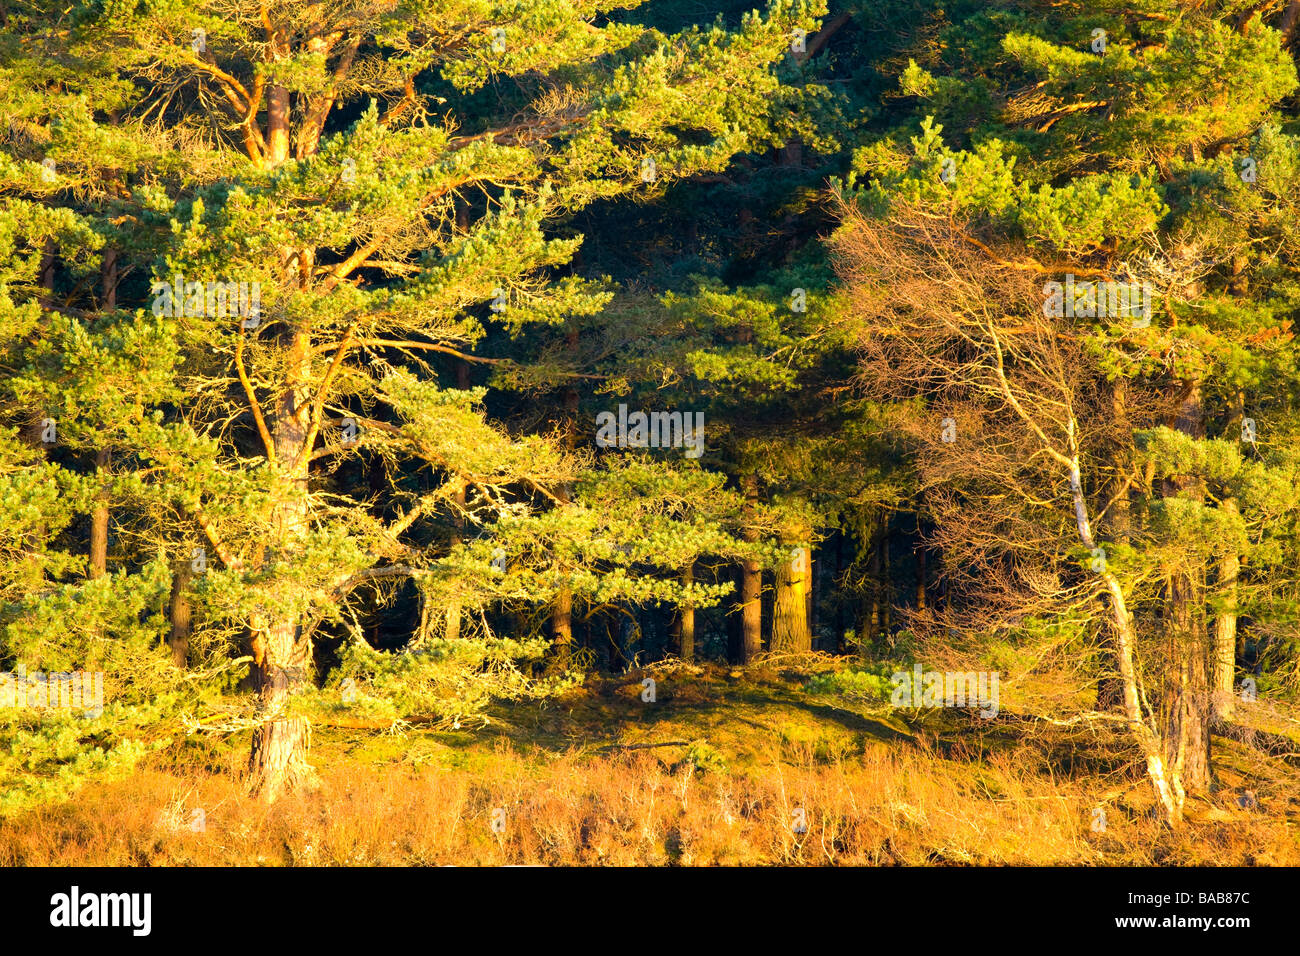 Ecosse Highlands écossais forestiers du Parc National de Cairngorms, sur les rives du Loch Milton près de Boat of Garten Banque D'Images